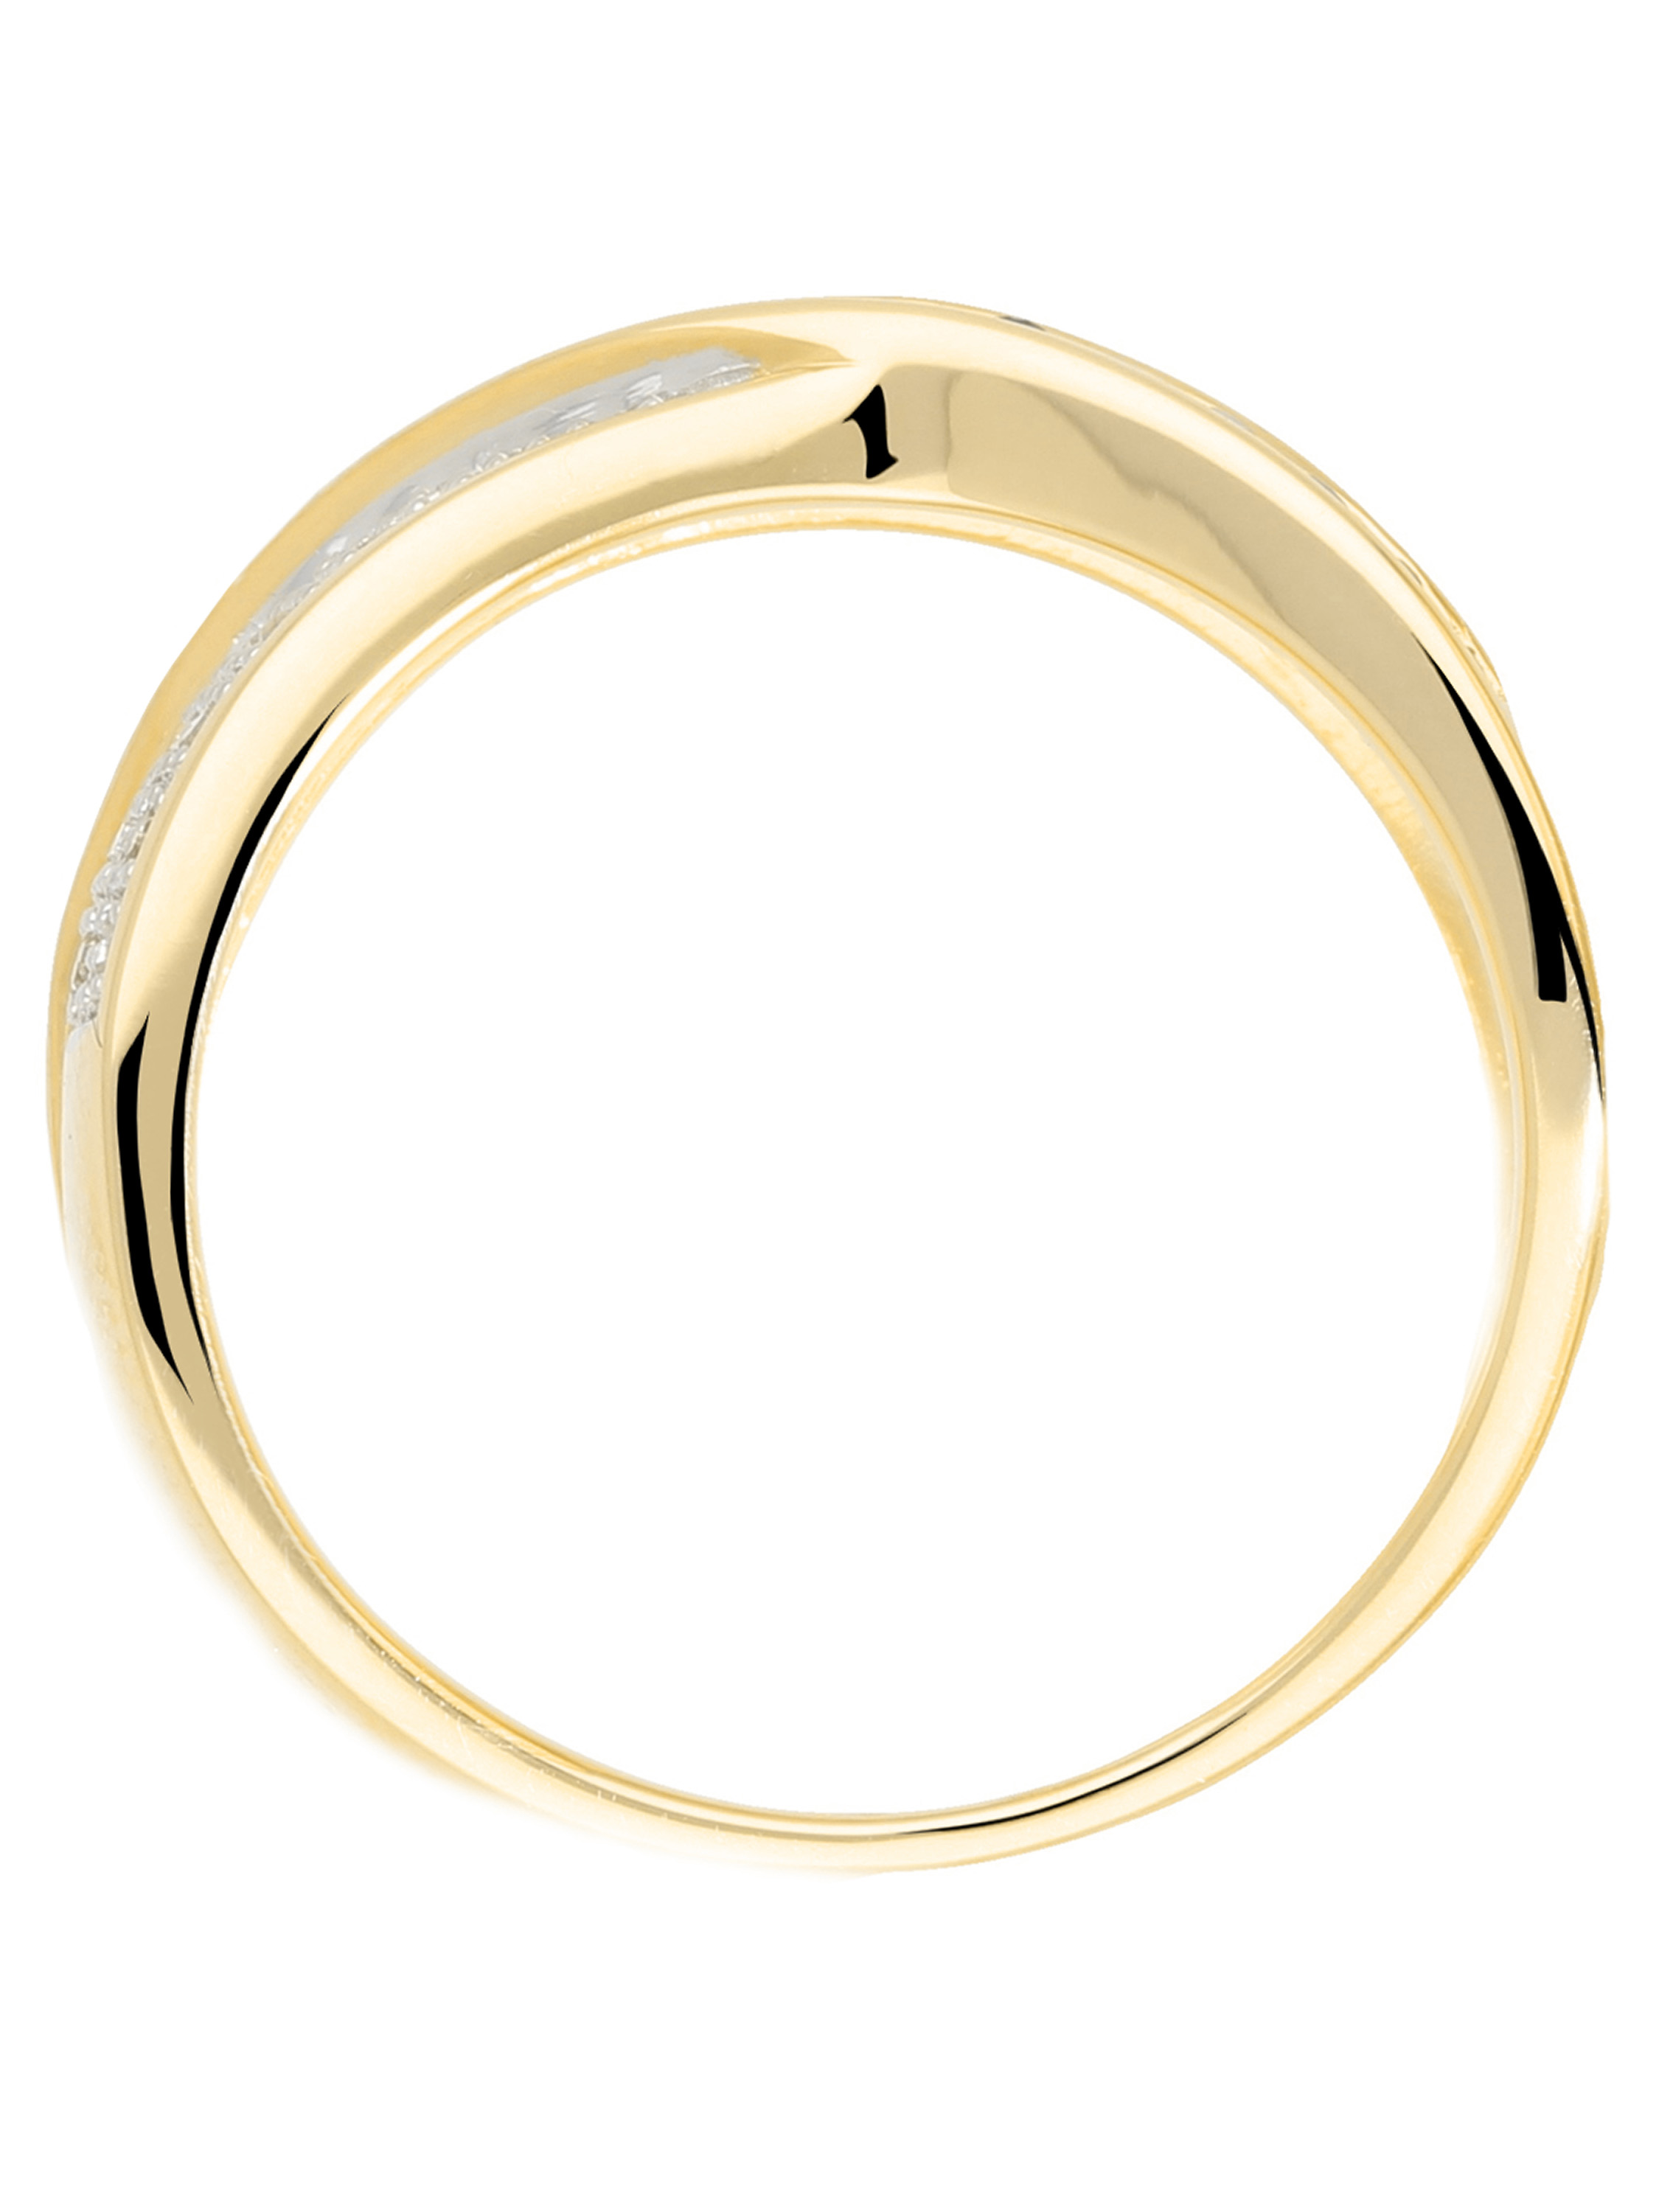 Melvena - Saphir & Diamant Ring mit Edelstein 585 Gold - 0,13ct. - Größe 50